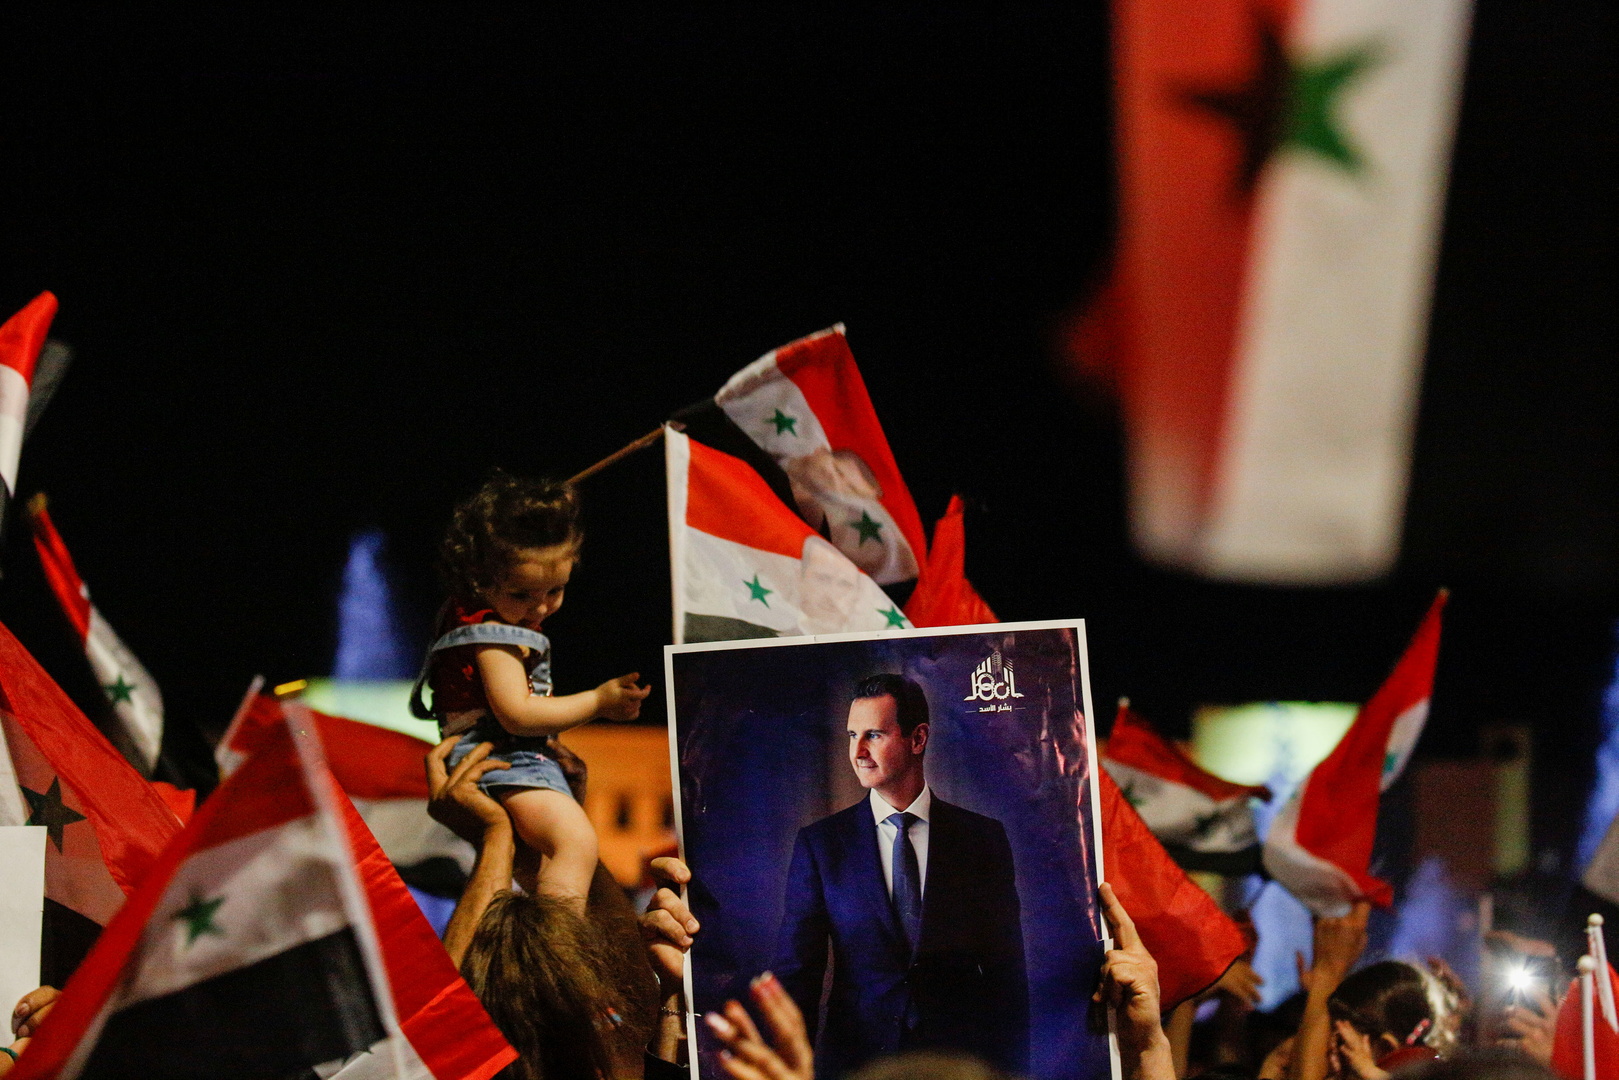 موسكو: الانتخابات في سوريا مهمة لتعزيز استقرارها والتصريحات الغربية عنها ضغط سياسي